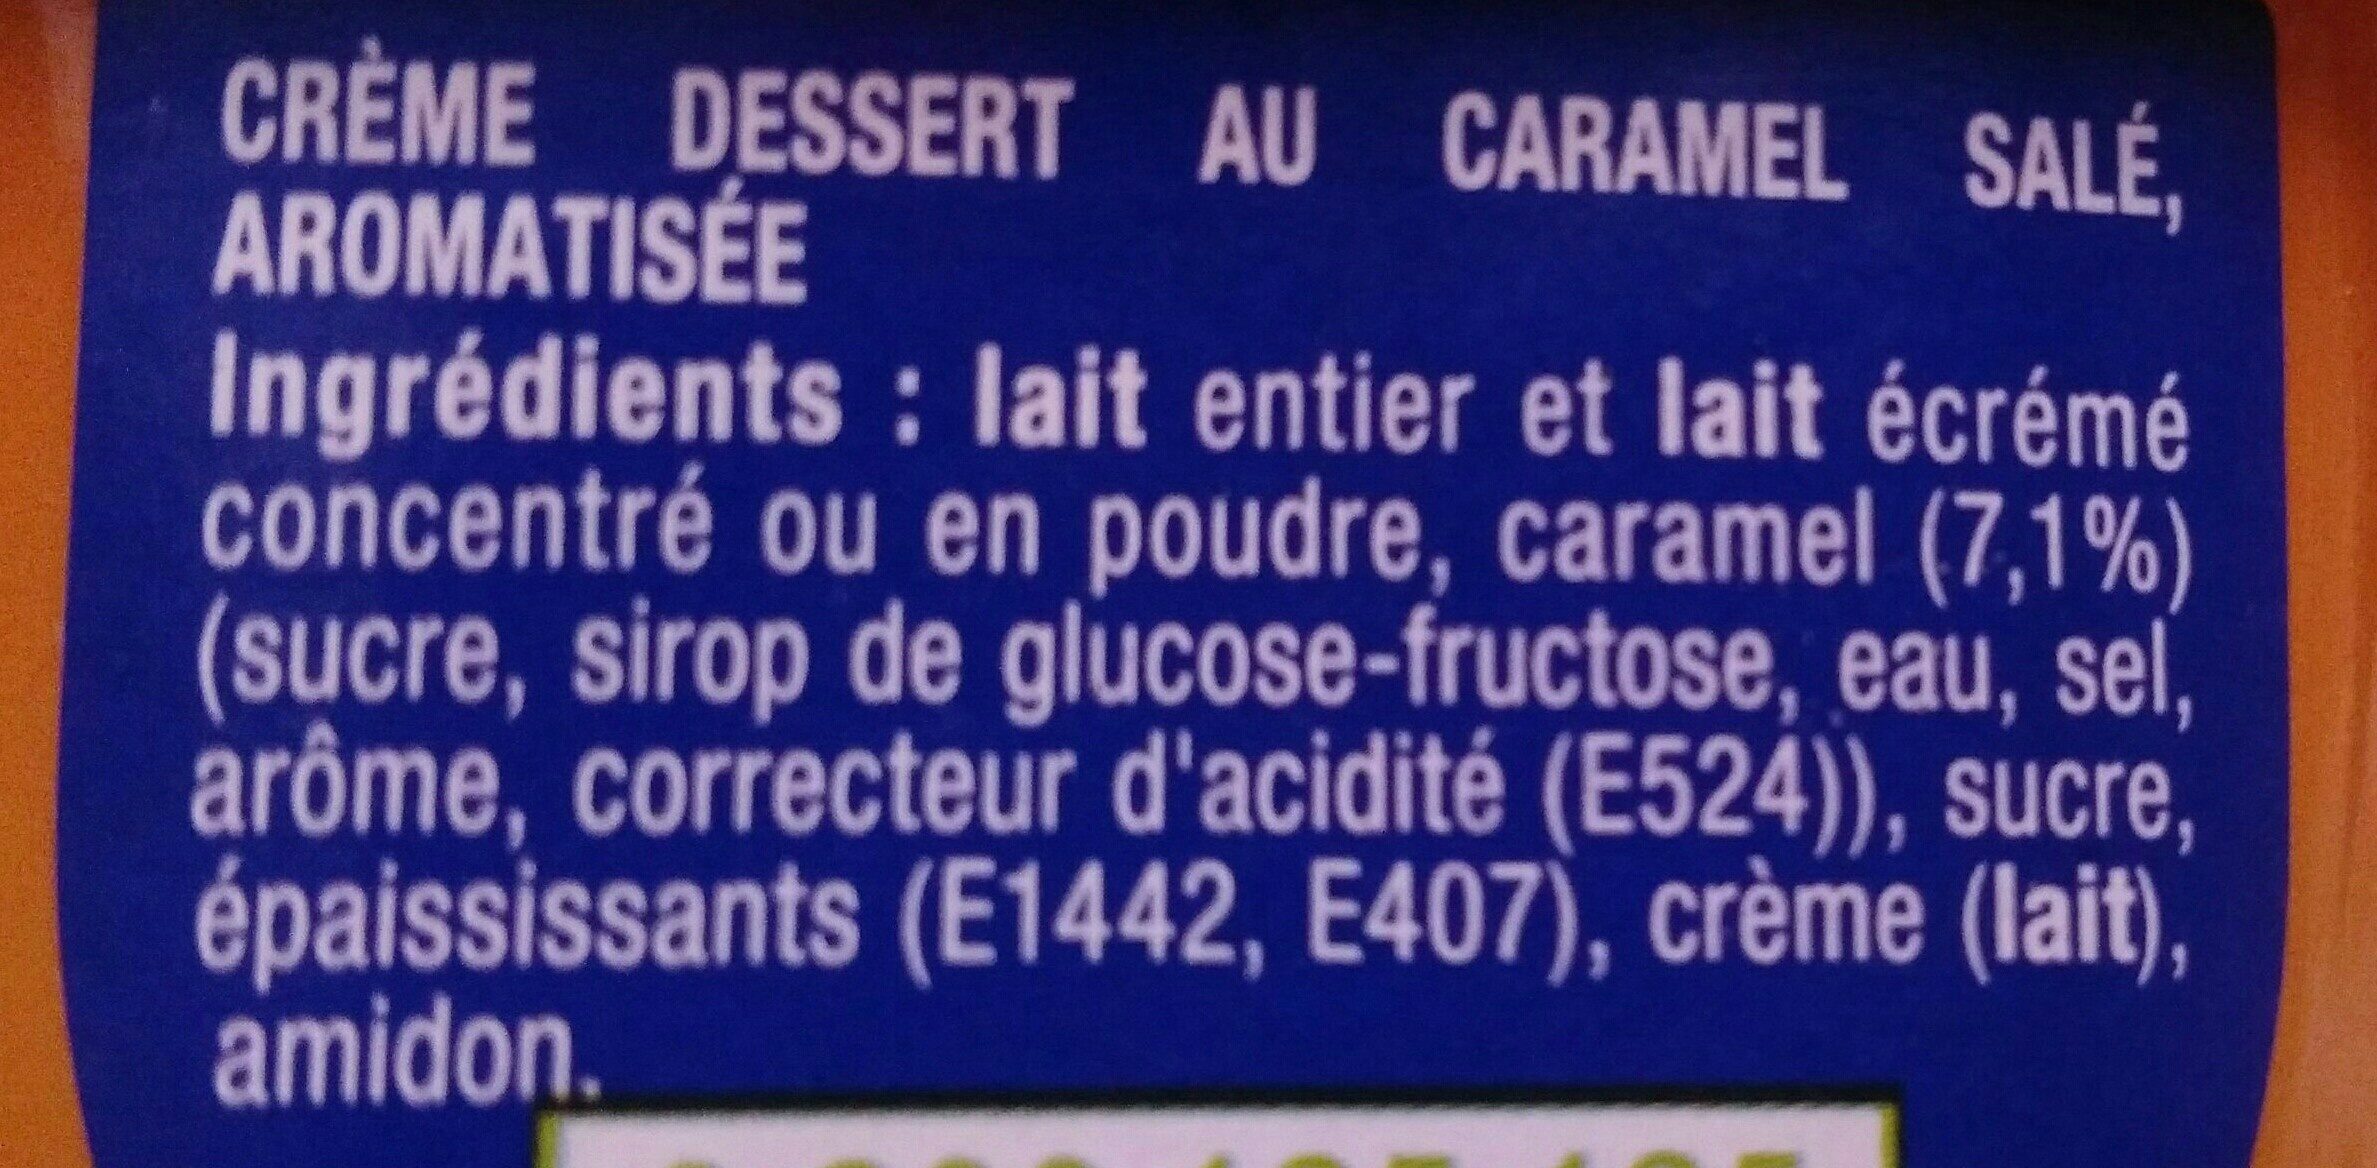 Danette 125 g x 4 caramel sale - Ingredients - fr